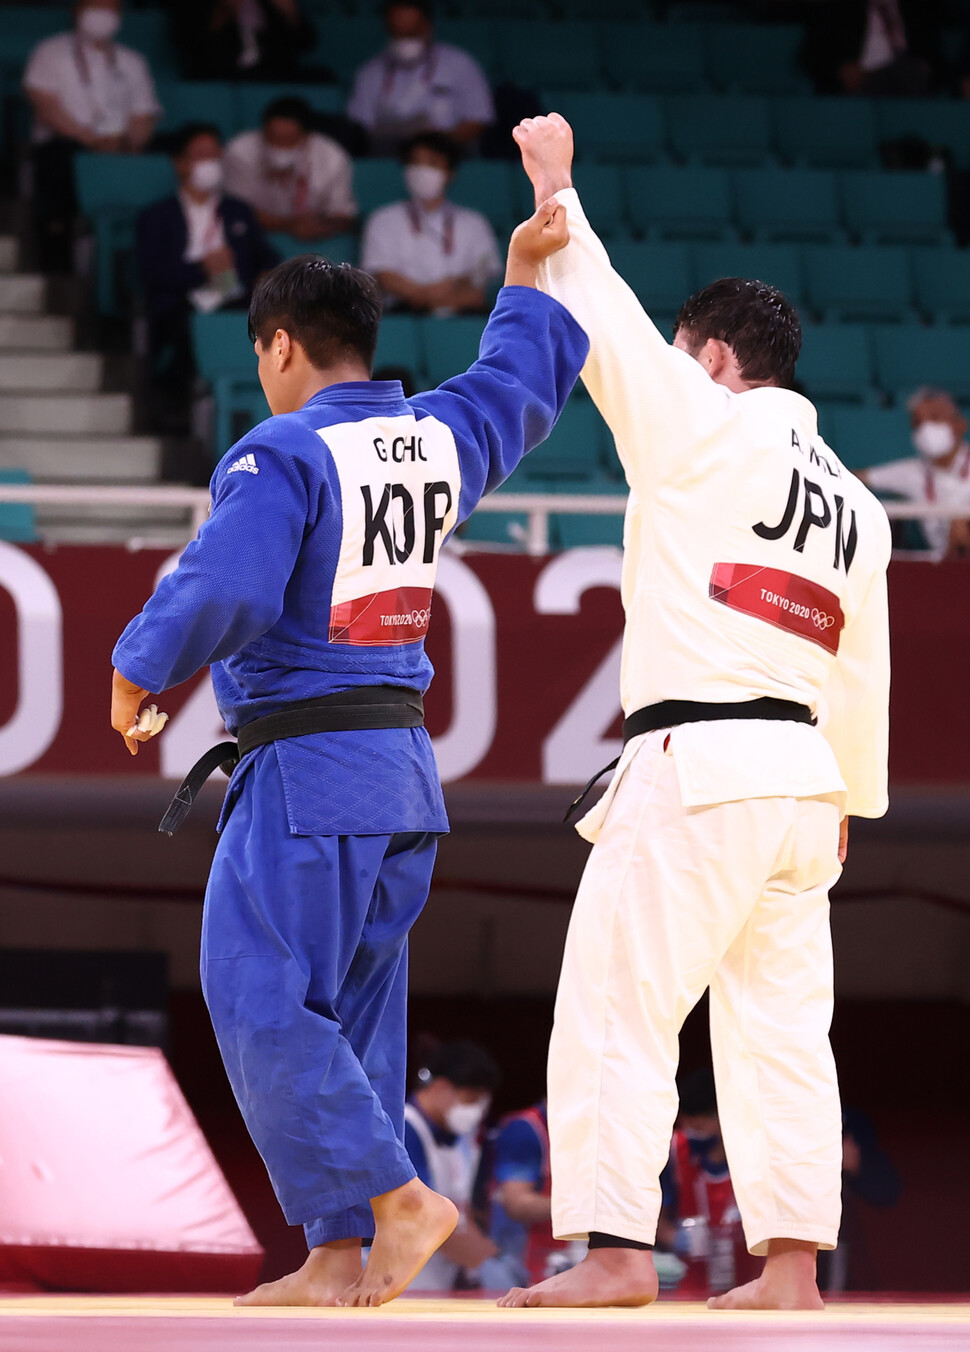 7月29日、東京武道館で行われた東京五輪の柔道男子100kg級決勝で、日本のアーロン・ウルフに敗れた後、韓国のクハ・チョーがウルフの手を握っている。 ユンハプニュース。